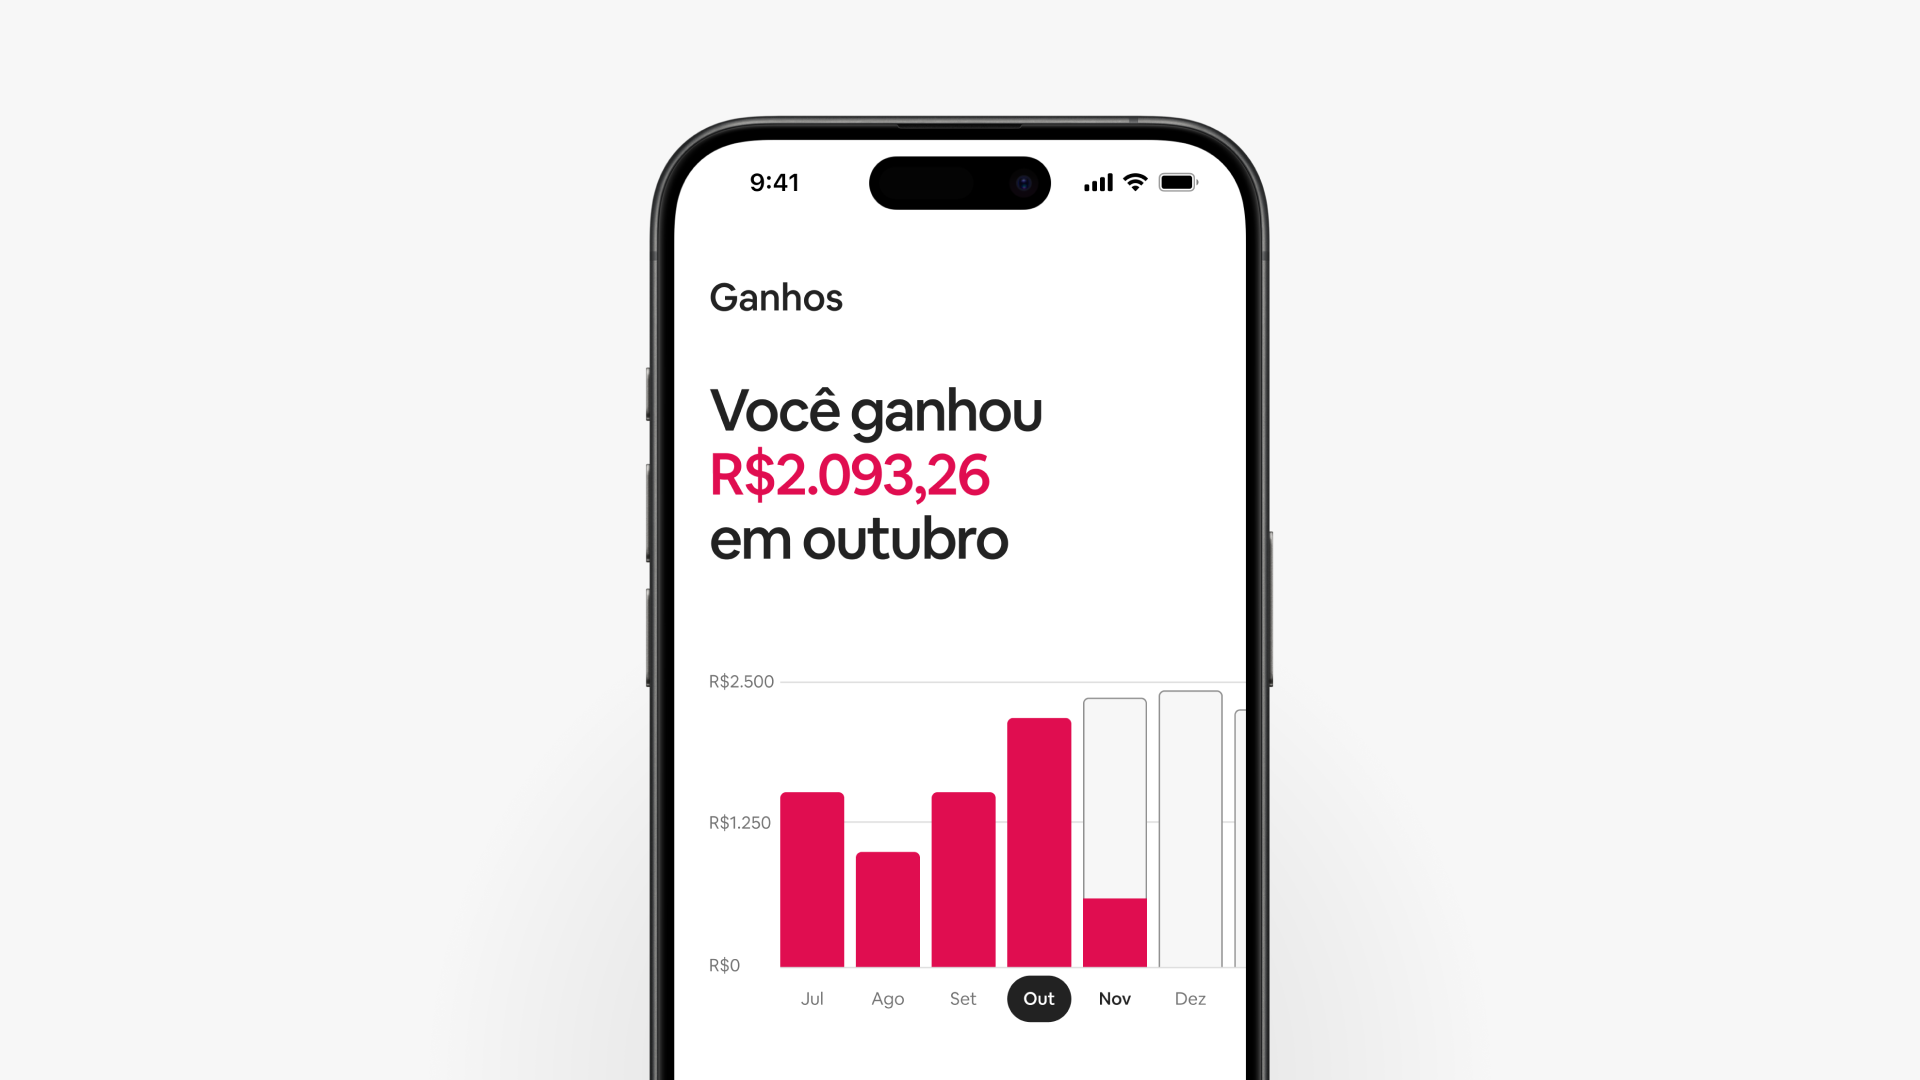 A tela de um celular mostra como os anfitriões do Airbnb podem filtrar os pagamentos por data no painel de ganhos, incluindo intervalos de datas personalizados.